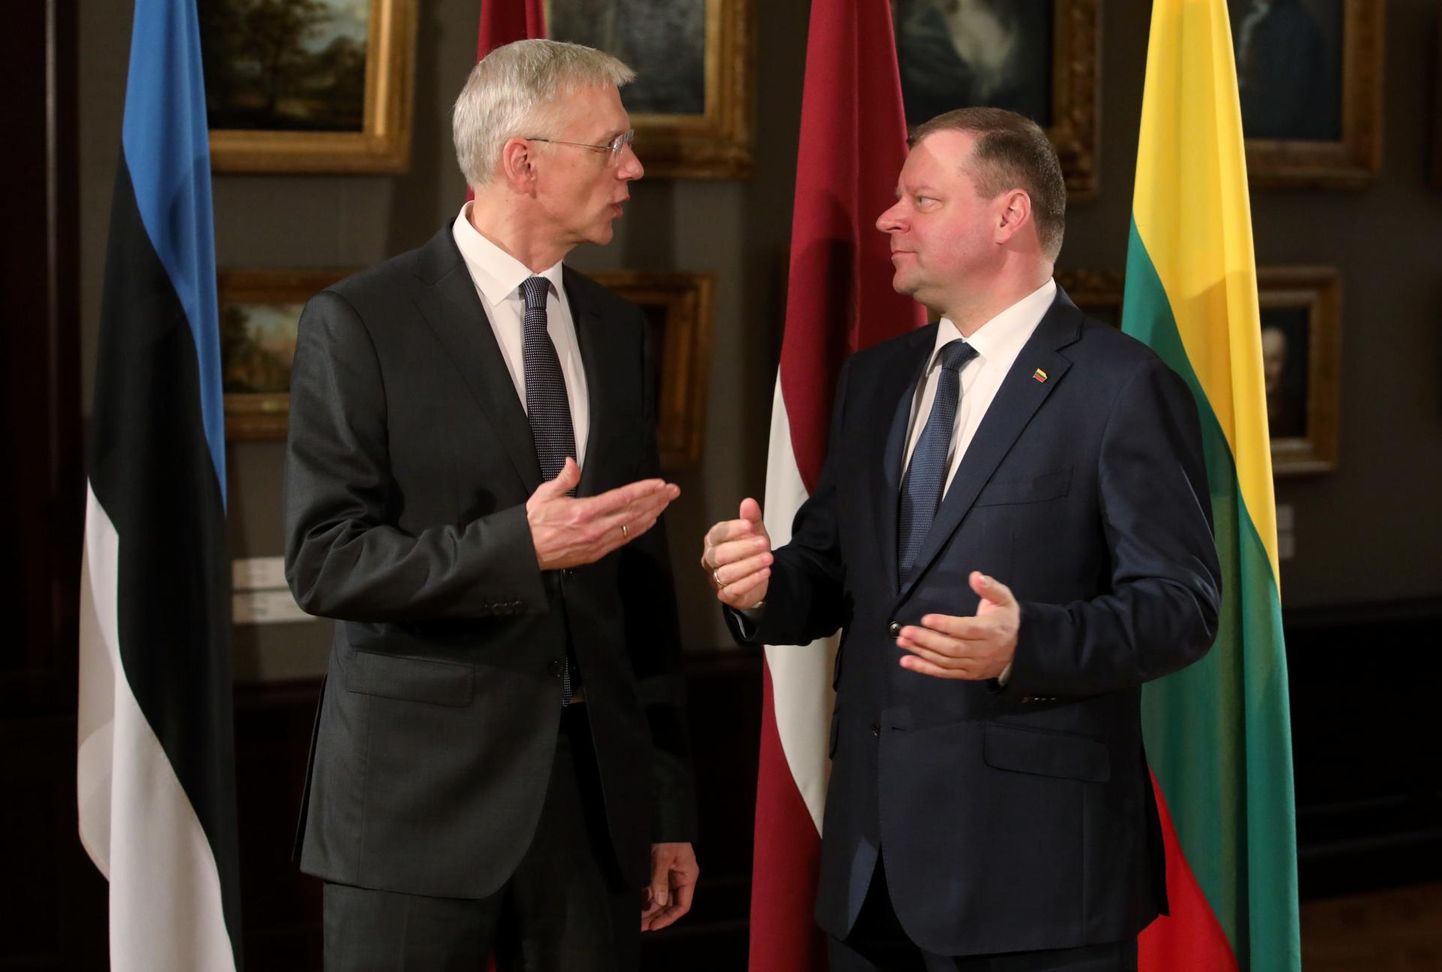 Läti peaminister Krišjānis Kariņš (vasakul) ja Leedu peaminister Saulius Skvernelis Riias. Jüri Ratas kohtumisele ei jõudnud.